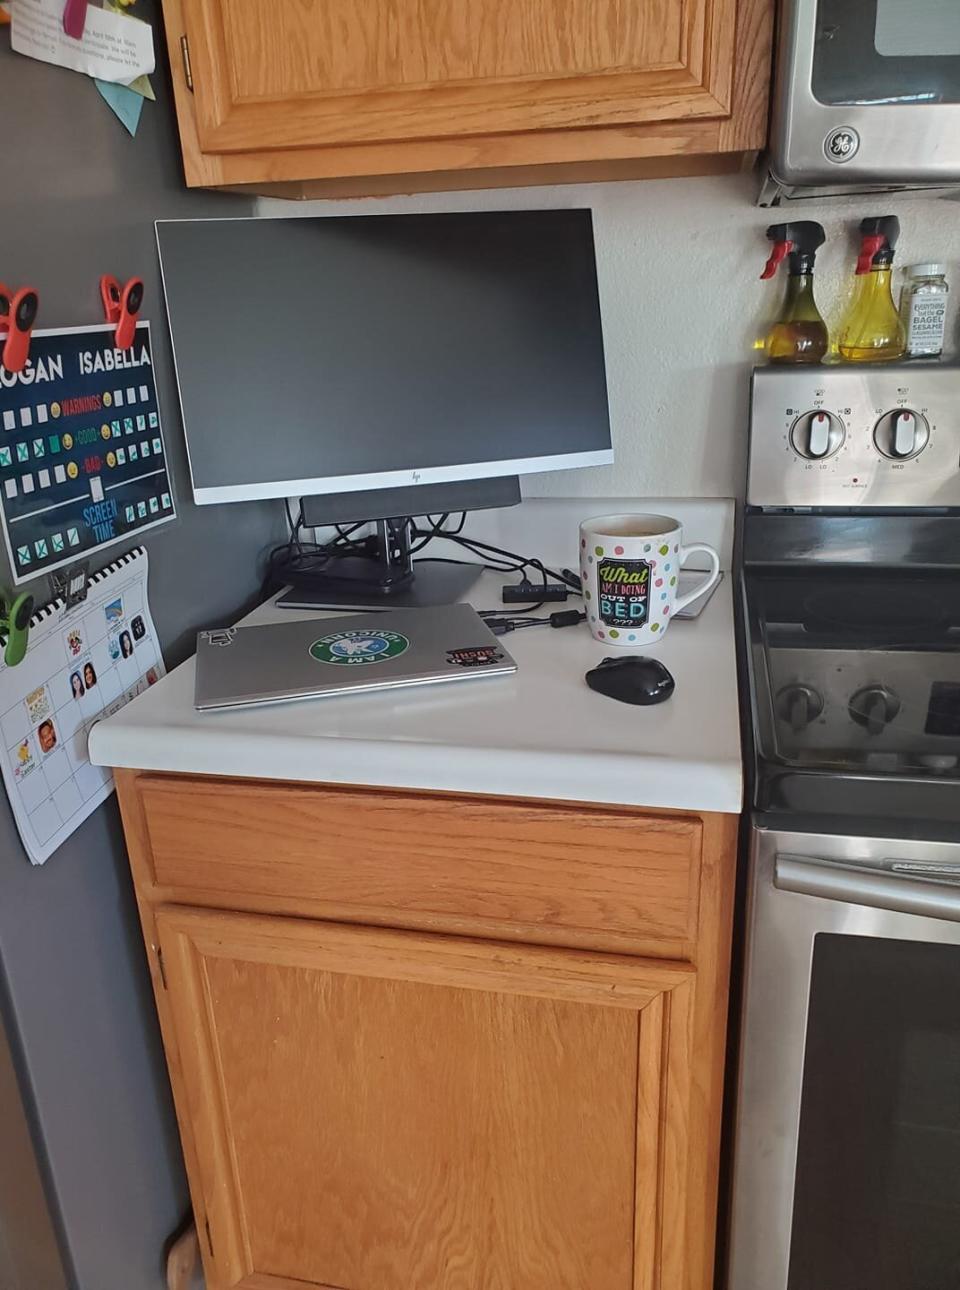 High school teacher Rachel Cresci transformed her kitchen area into her home office. (Photo: Rachel Cresci)